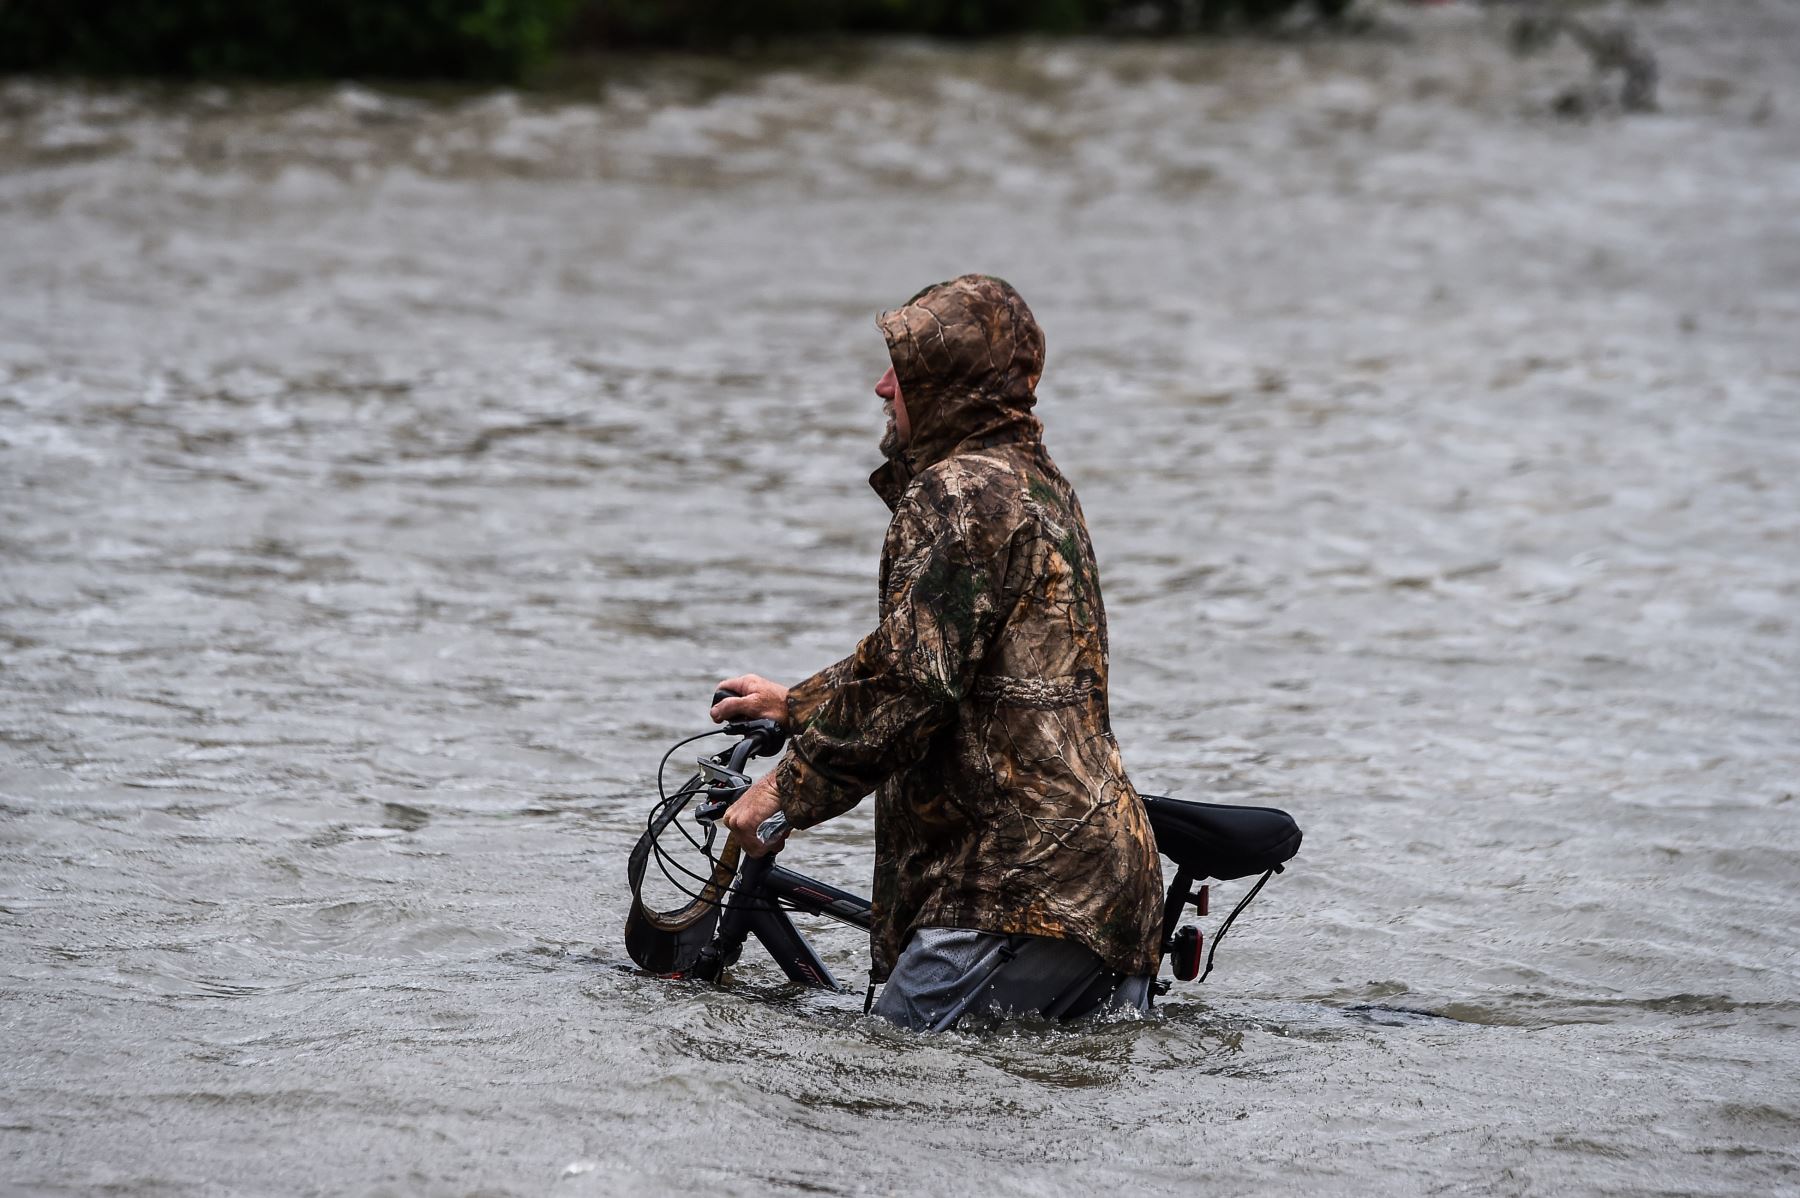 Un hombre camina con su bicicleta por una calle inundada por el huracán Sally en Pensacola, Florida, el 16 de septiembre de 2020. El huracán Sally se precipitó en la costa del Golfo de EE. UU. El miércoles temprano, con pronósticos de lluvias torrenciales que podrían provocar inundaciones repentinas "históricas" y potencialmente mortales. Foto: AFP